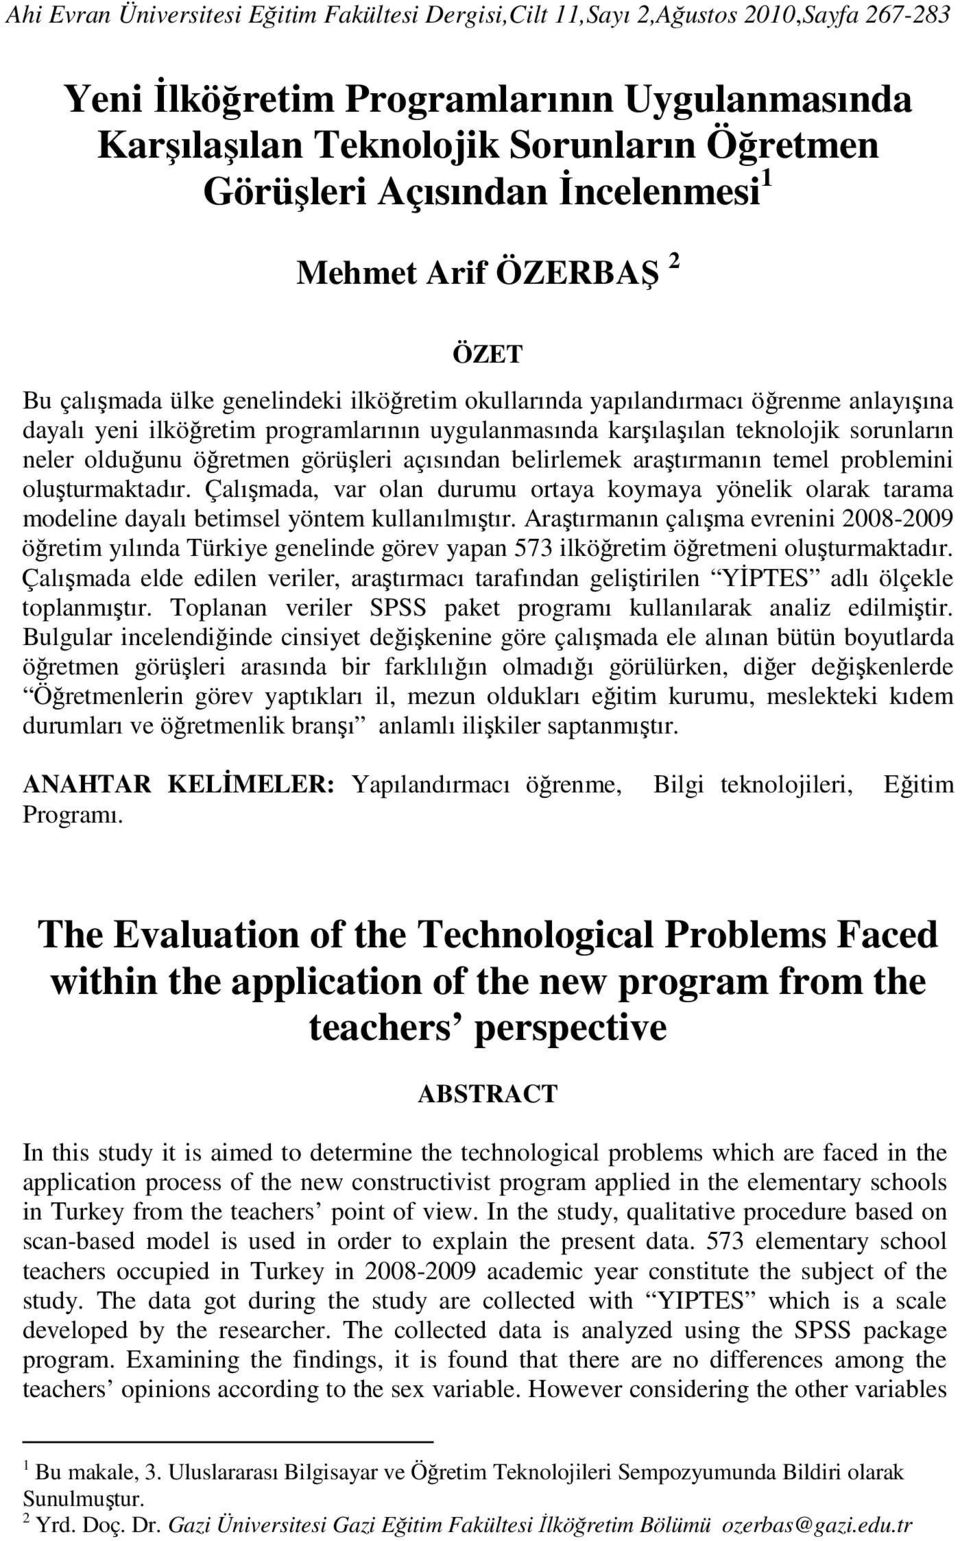 teknolojik sorunların neler olduğunu öğretmen görüşleri açısından belirlemek araştırmanın temel problemini oluşturmaktadır.